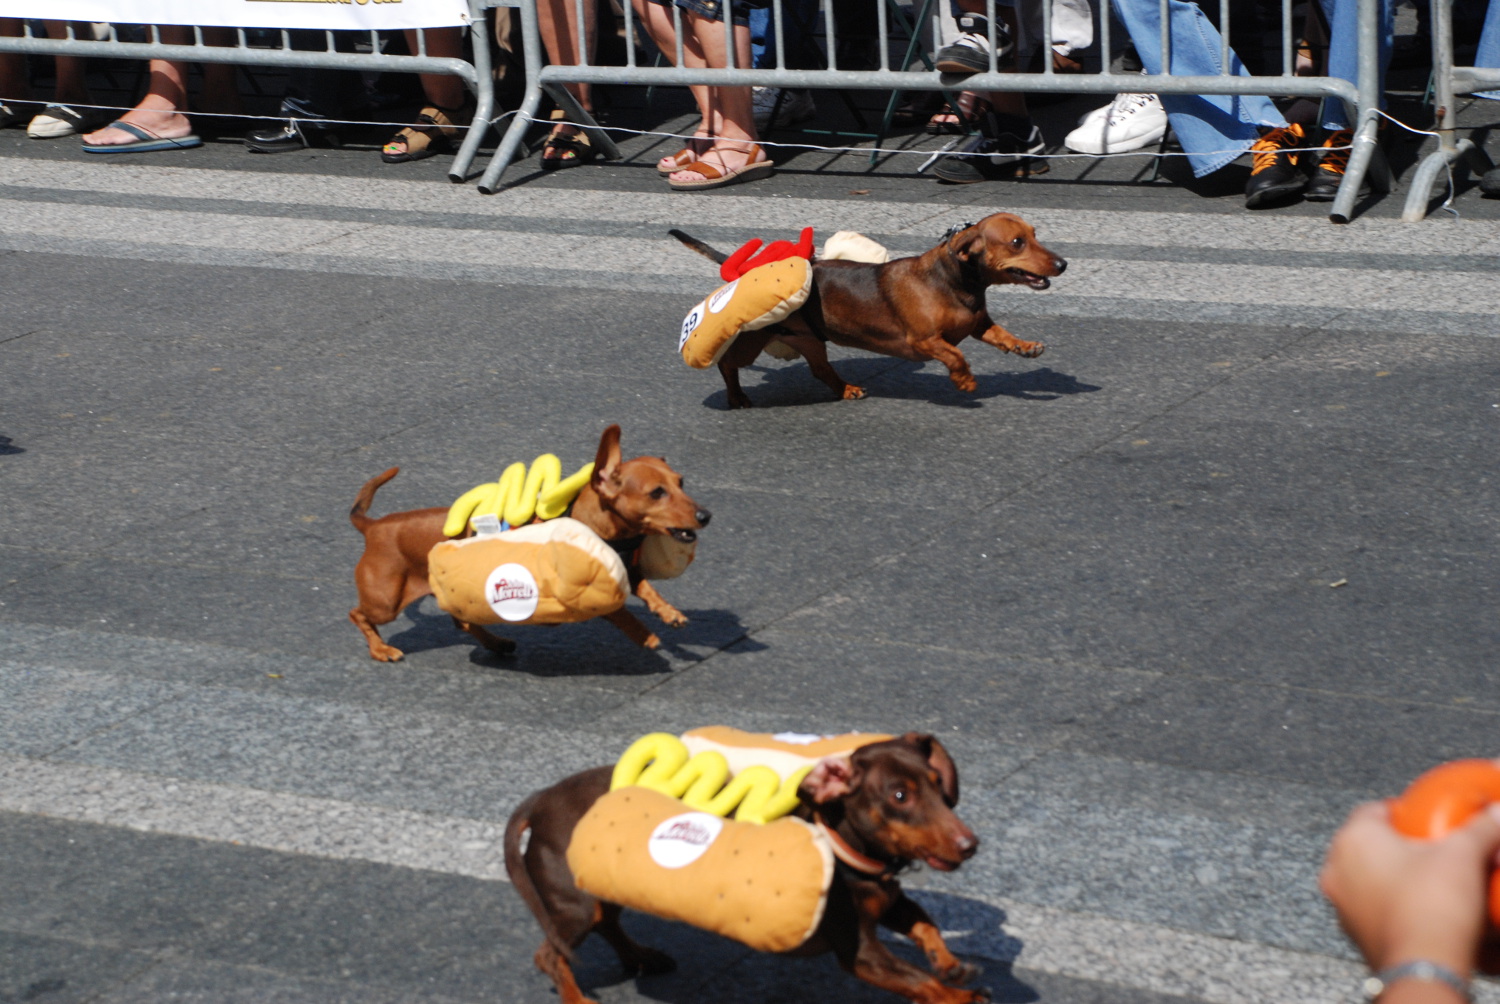 Wiener dog racing